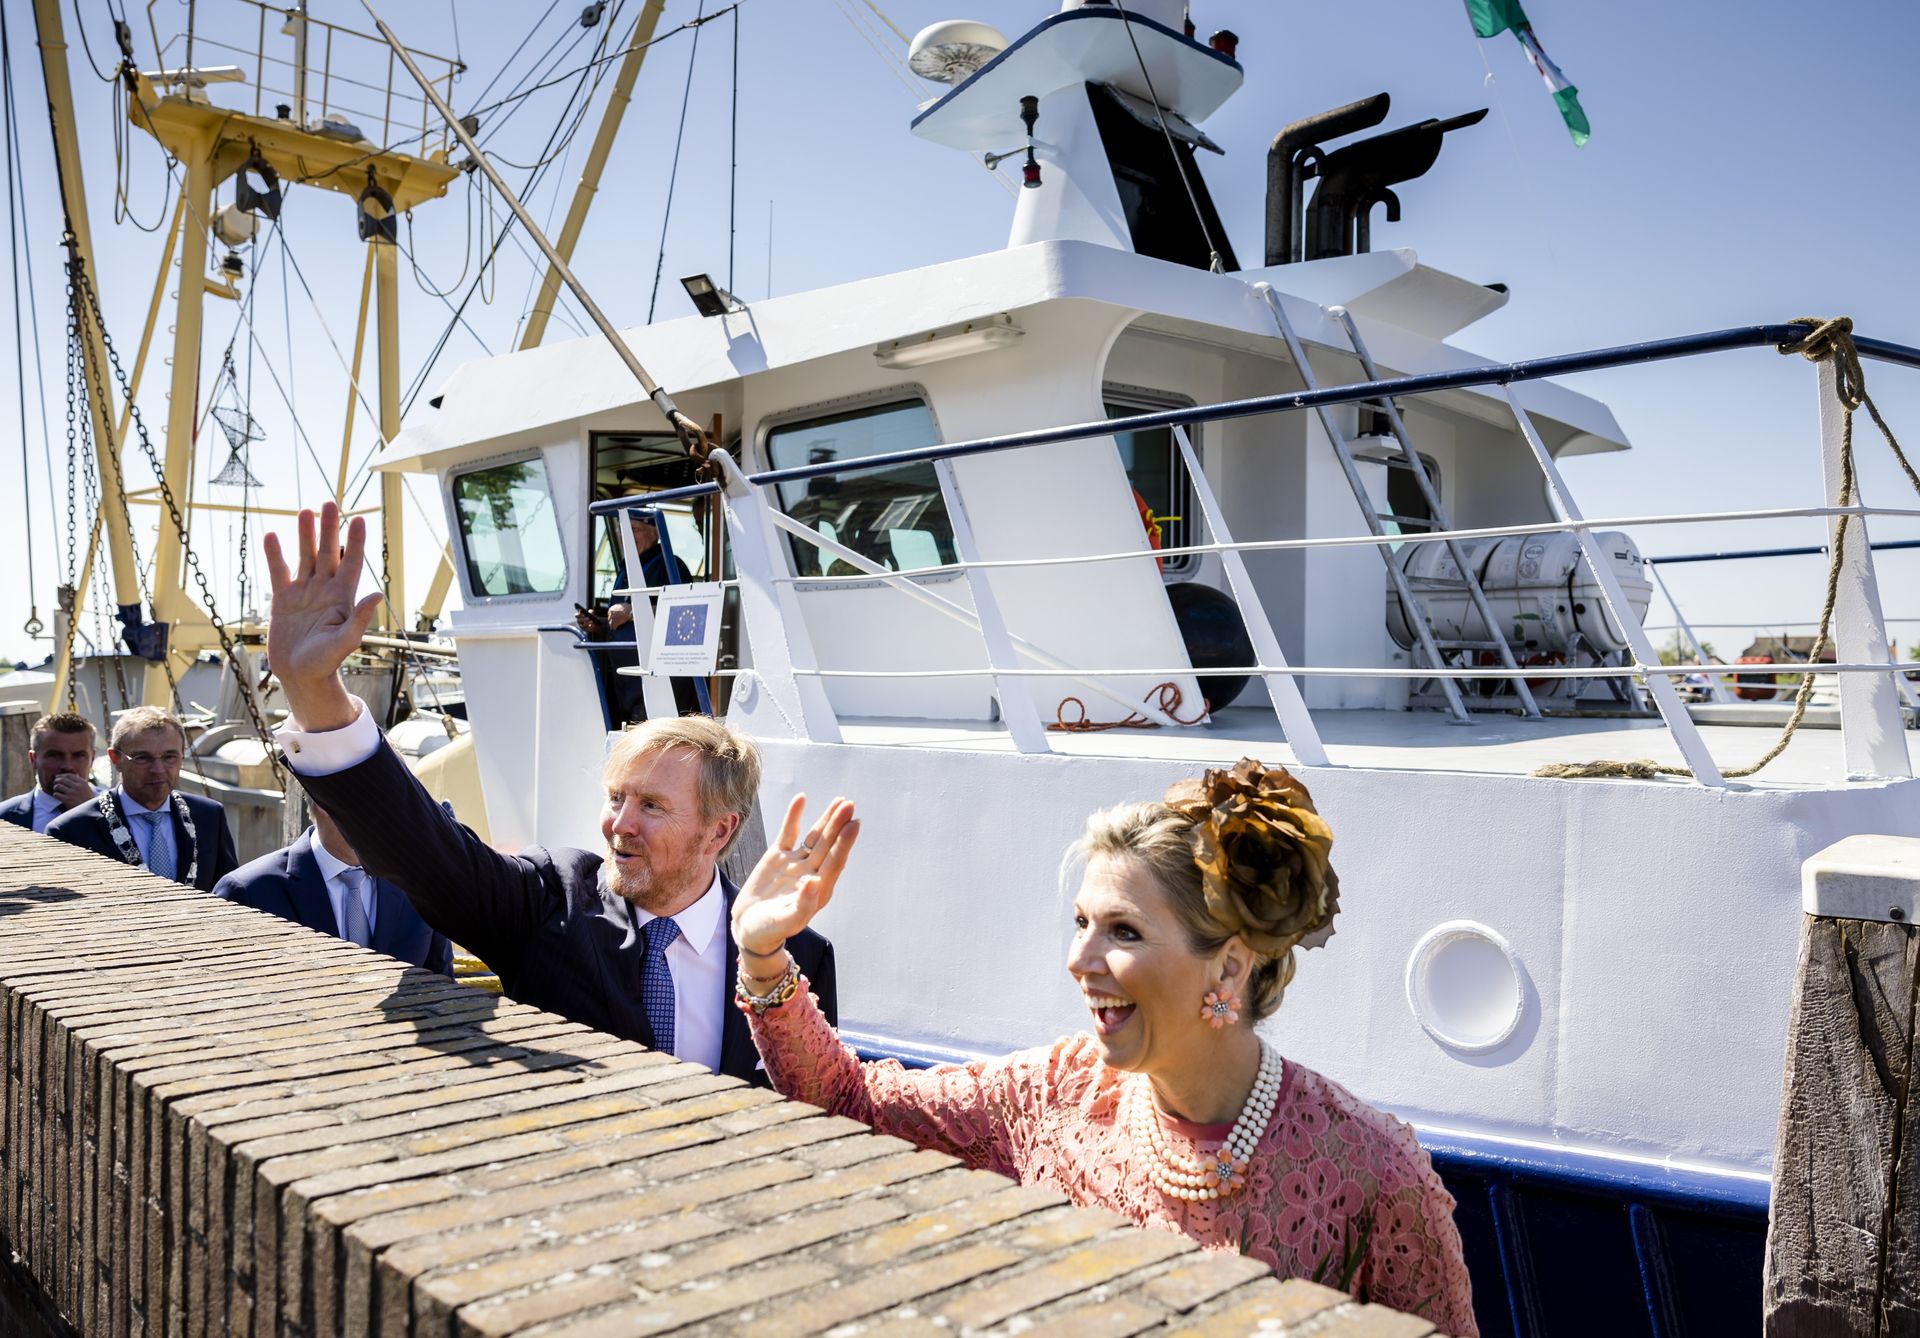 Koning Willem-Alexander en koningin Maxima bekijken een vissersschip tijdens een bezoek aan Zoutkamp.